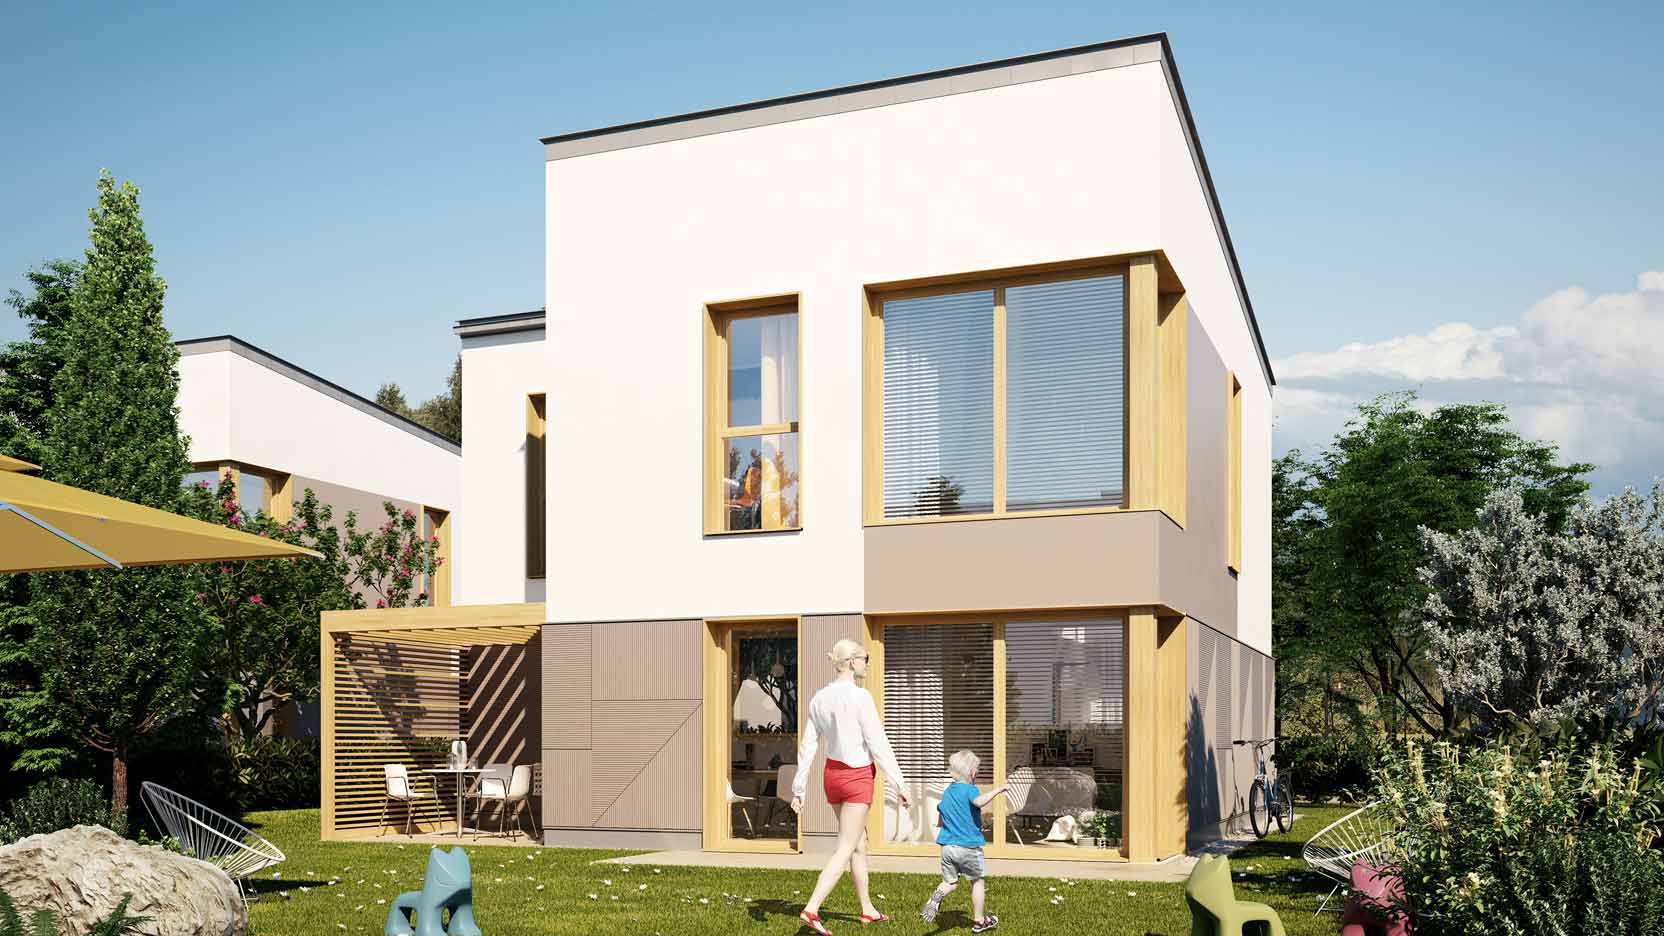 Garden Wood : Ossabois va construire 32 maisons individuelles groupées à Bussy Saint Georges, en Seine-et-Marne